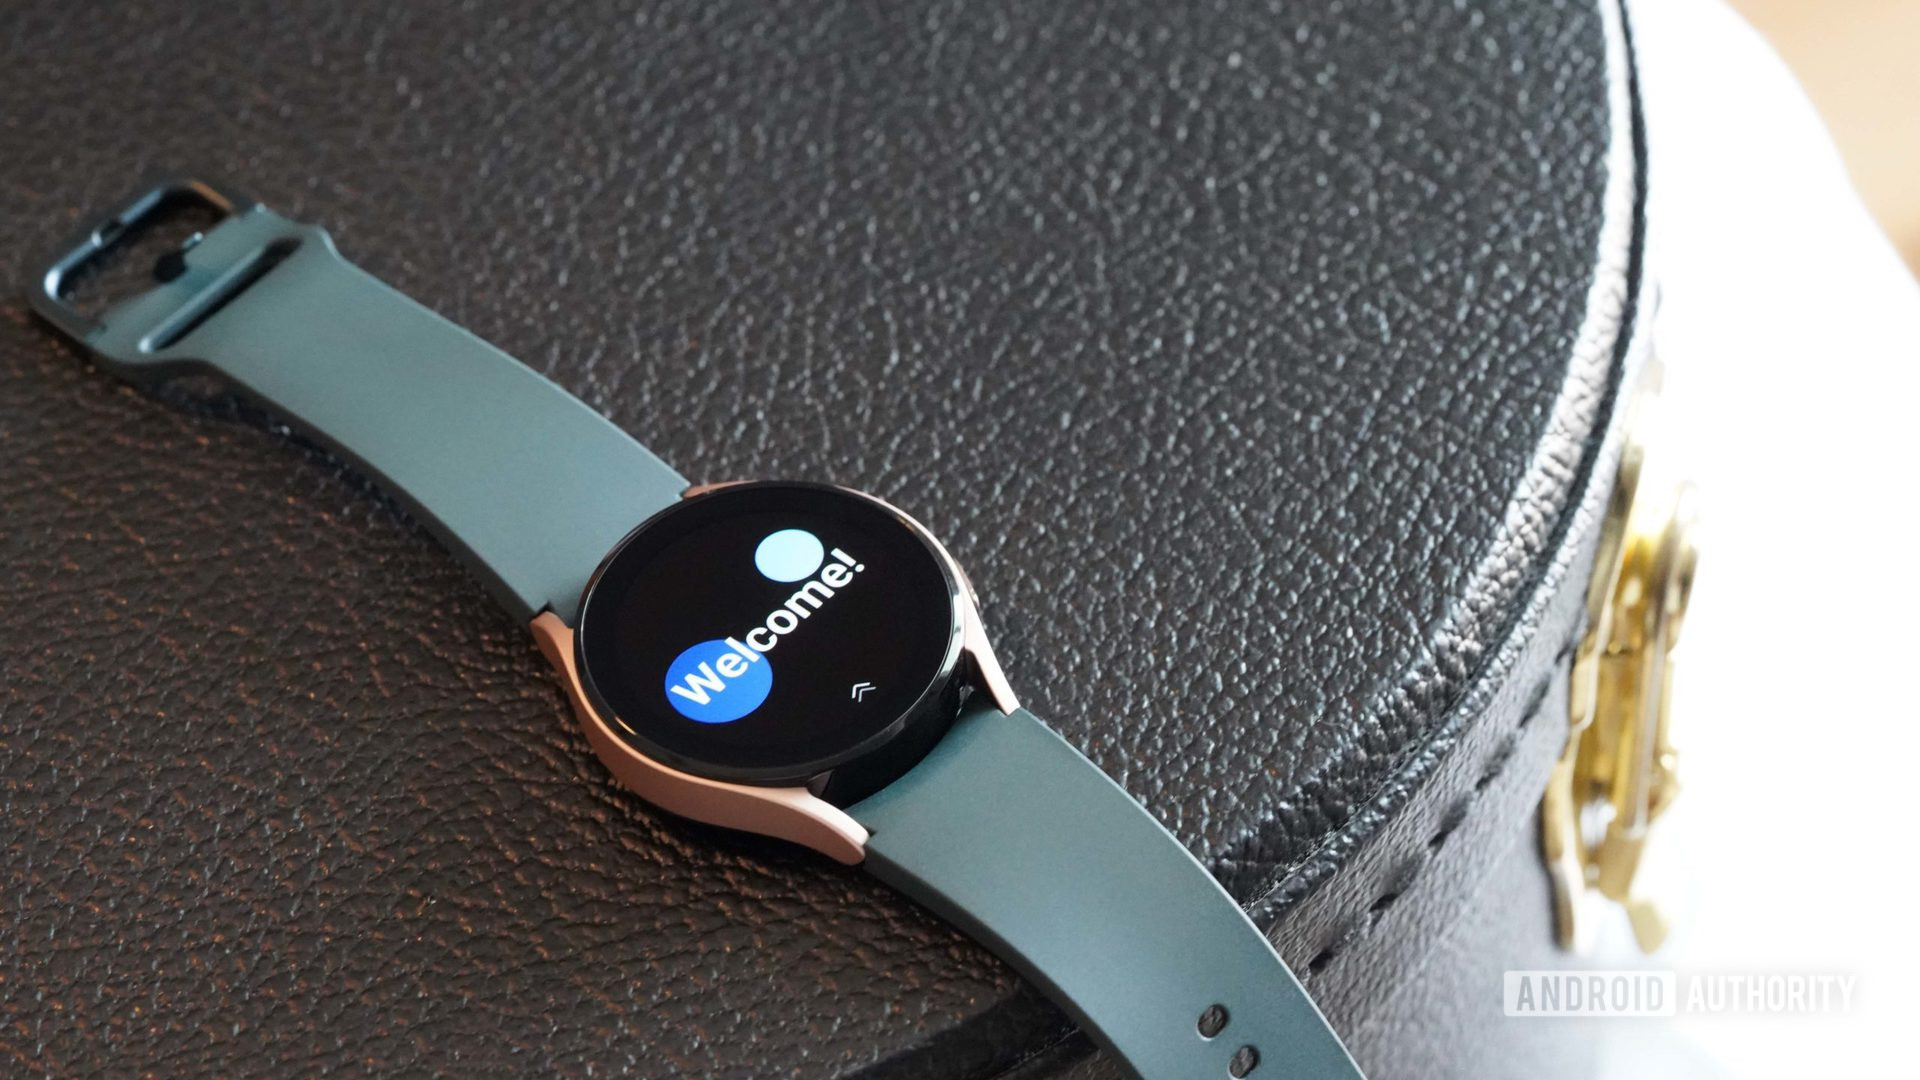 Samsung Galaxy Watch 4 bertumpu pada casing kulit hitam yang menampilkan layar sambutan jam tangan